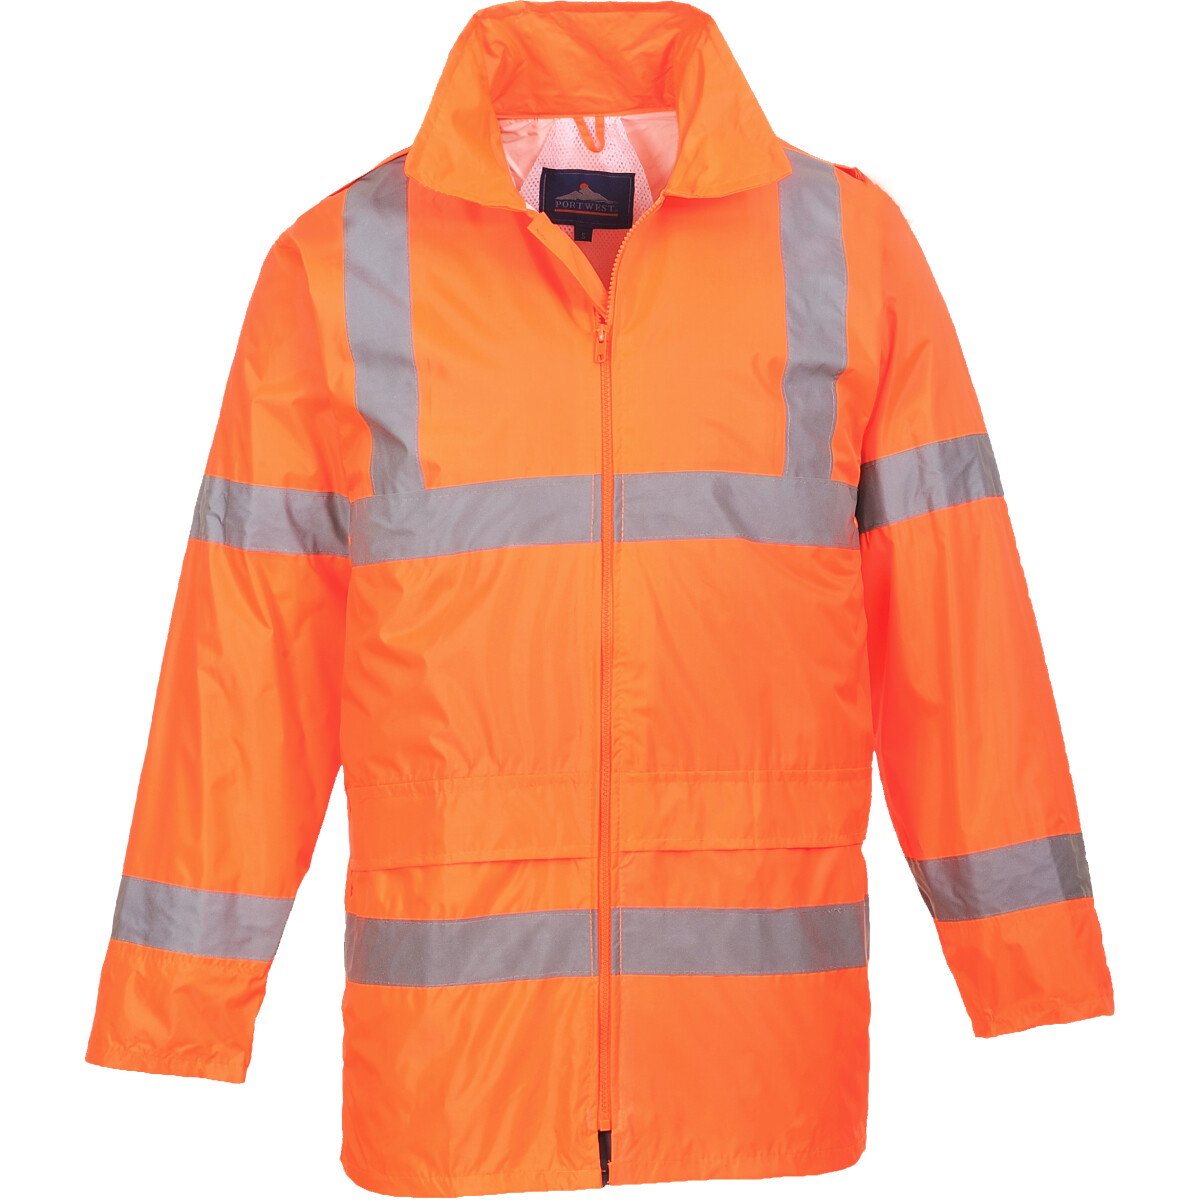 Portwest H440 Hi-Vis Rain Jacket  High Visibility Class 3 - Orange